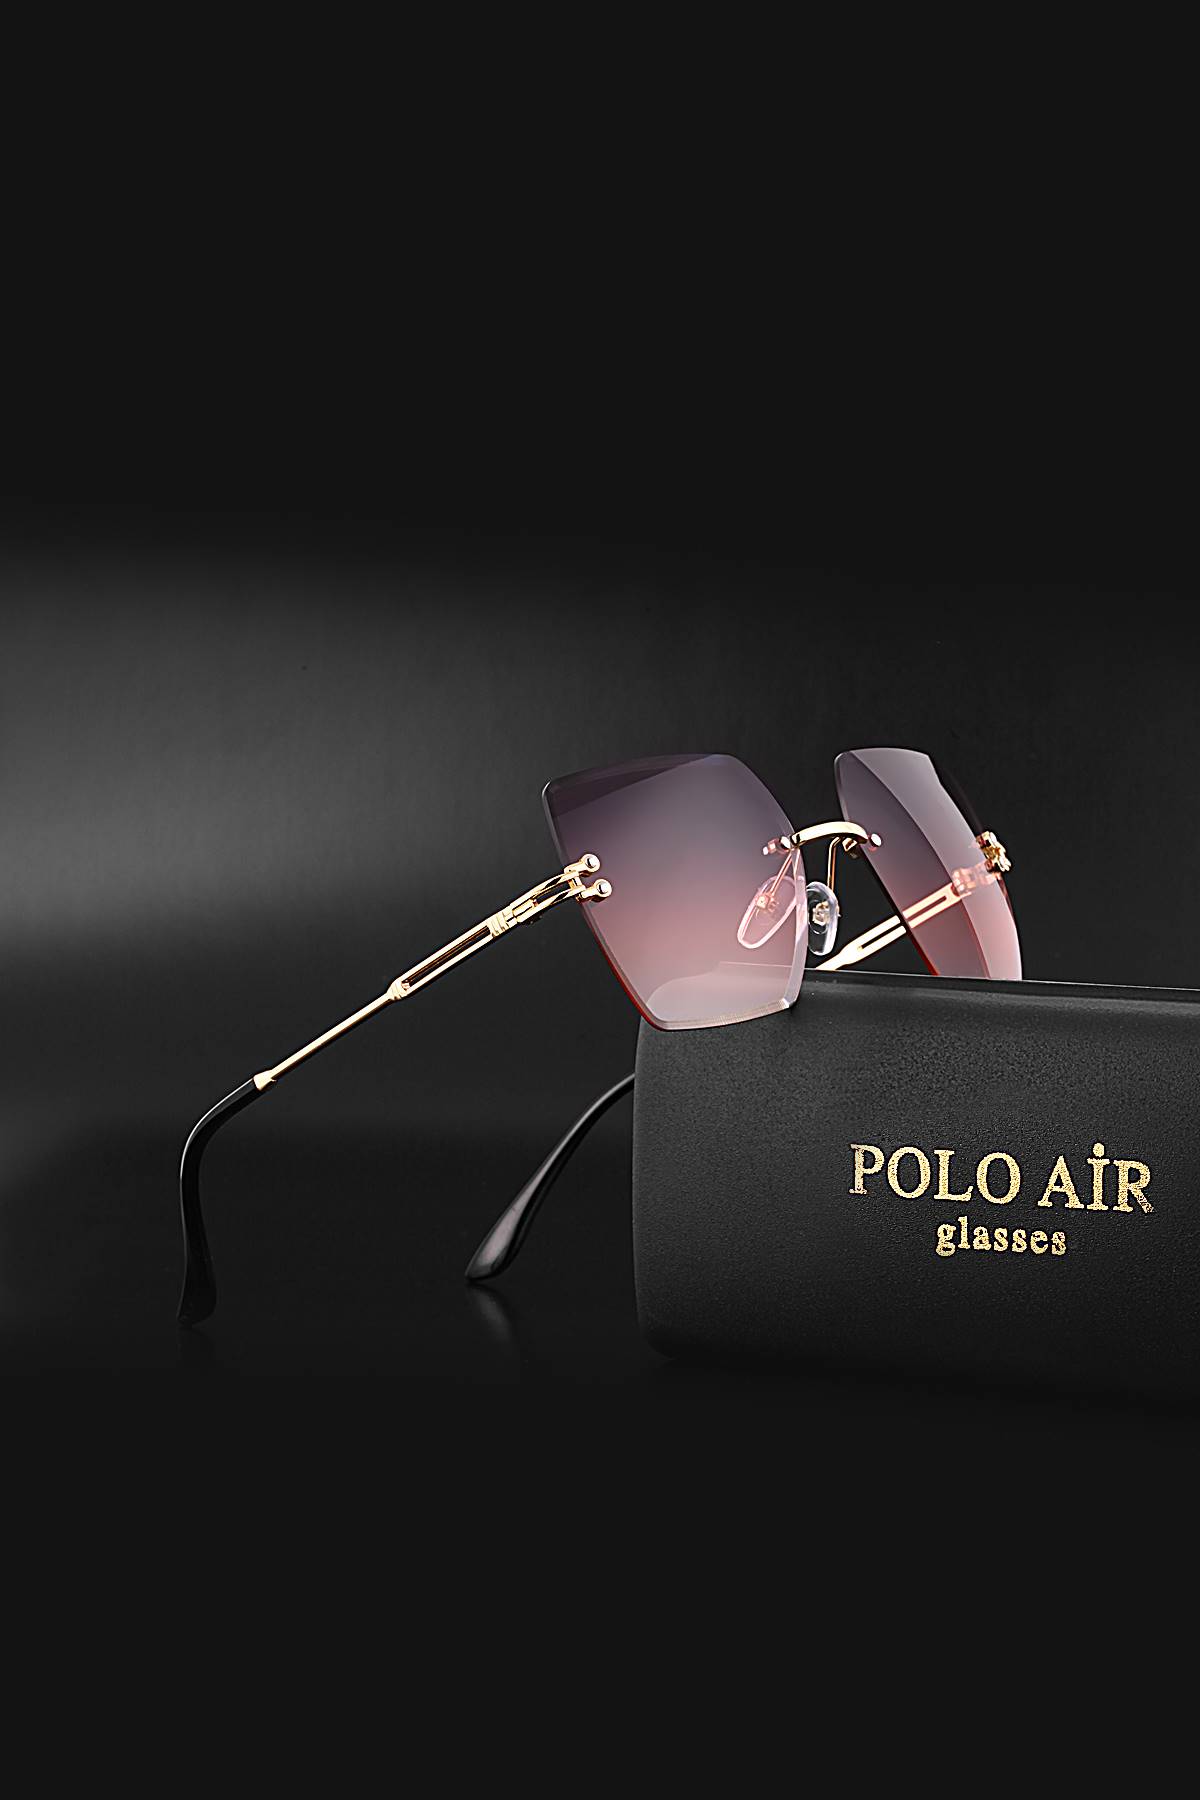 Polo Air Kadın Güneş Gözlüğü Pembe - Mor Renk Kristal Model PLG-2061C3